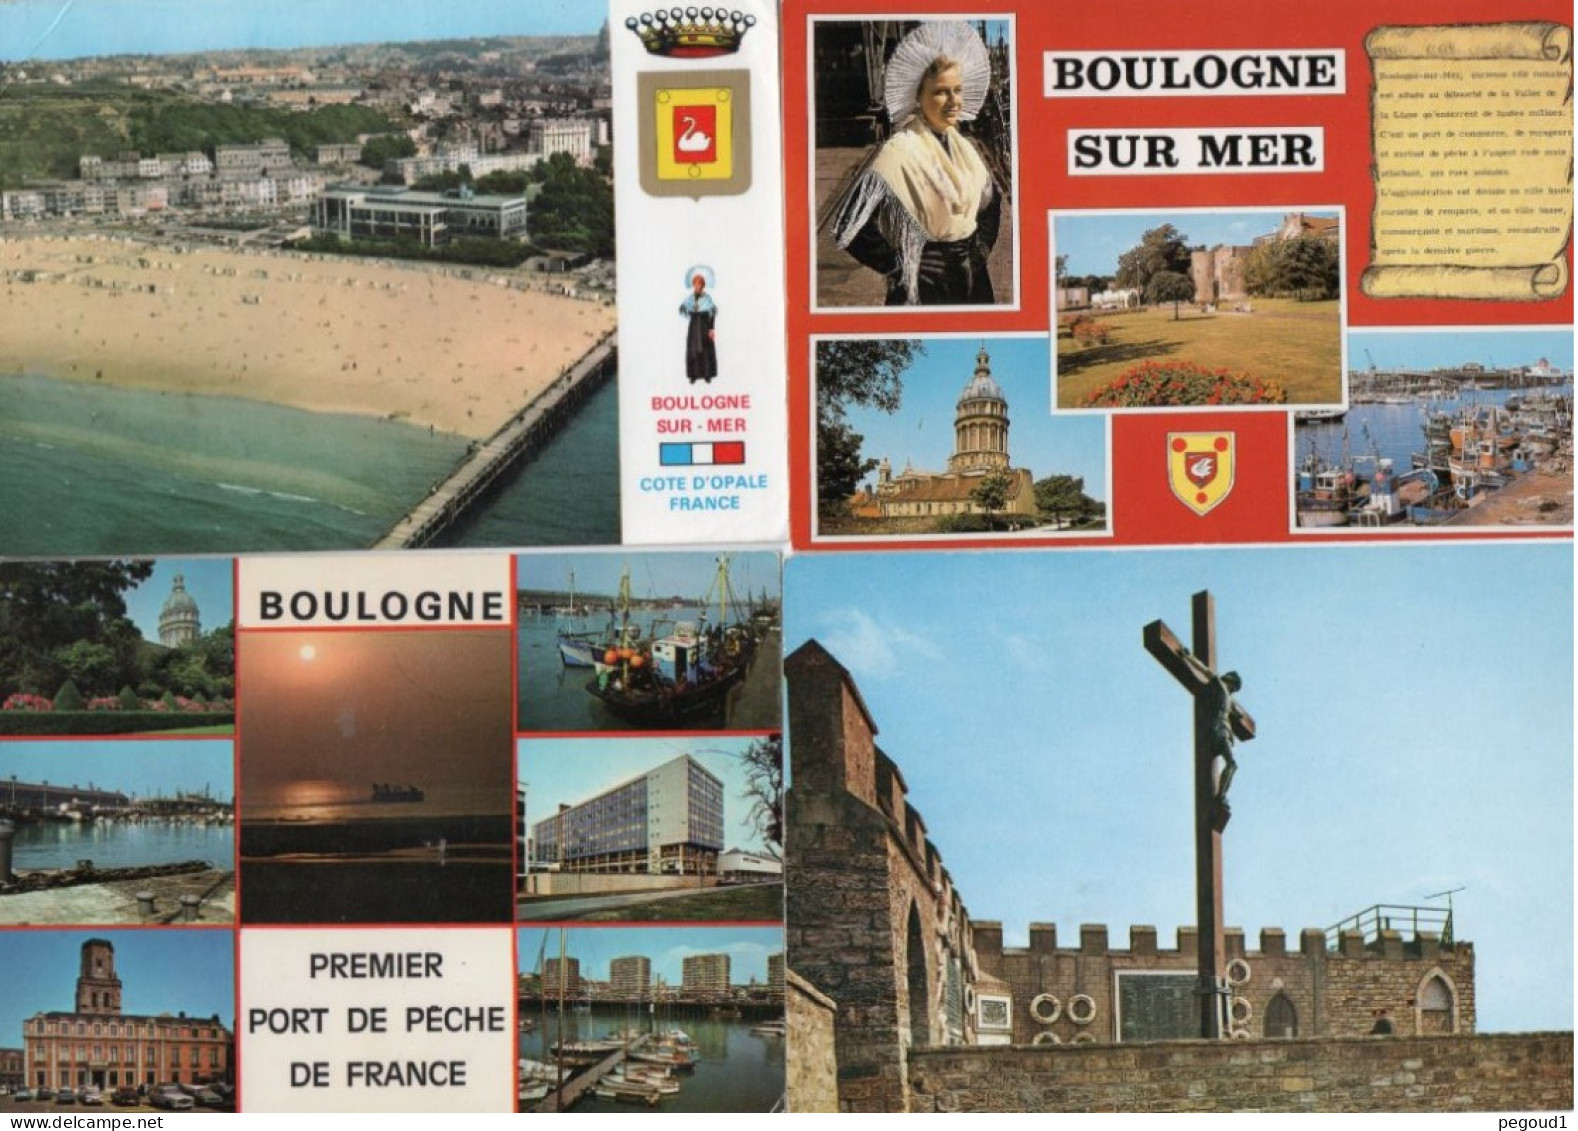 BOULOGNE-sur-MER  (P-de-C)   LOT  59 CARTES POSTALES . LIVRAISON OFFERTE   Achat Immédiat - Boulogne Sur Mer